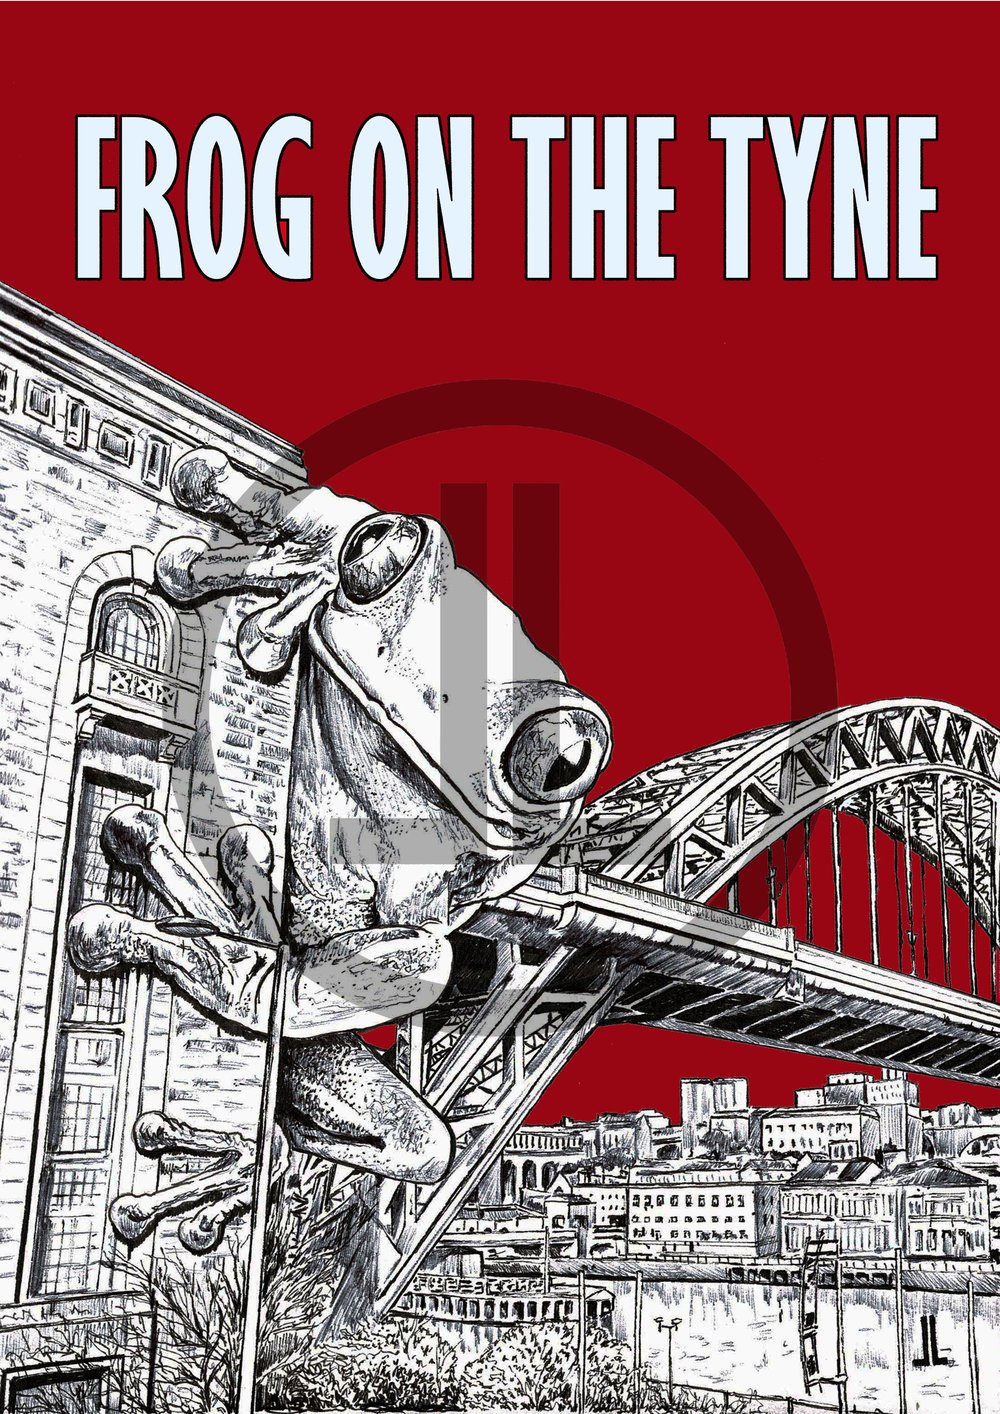 'Frog on the Tyne' - Newcastle